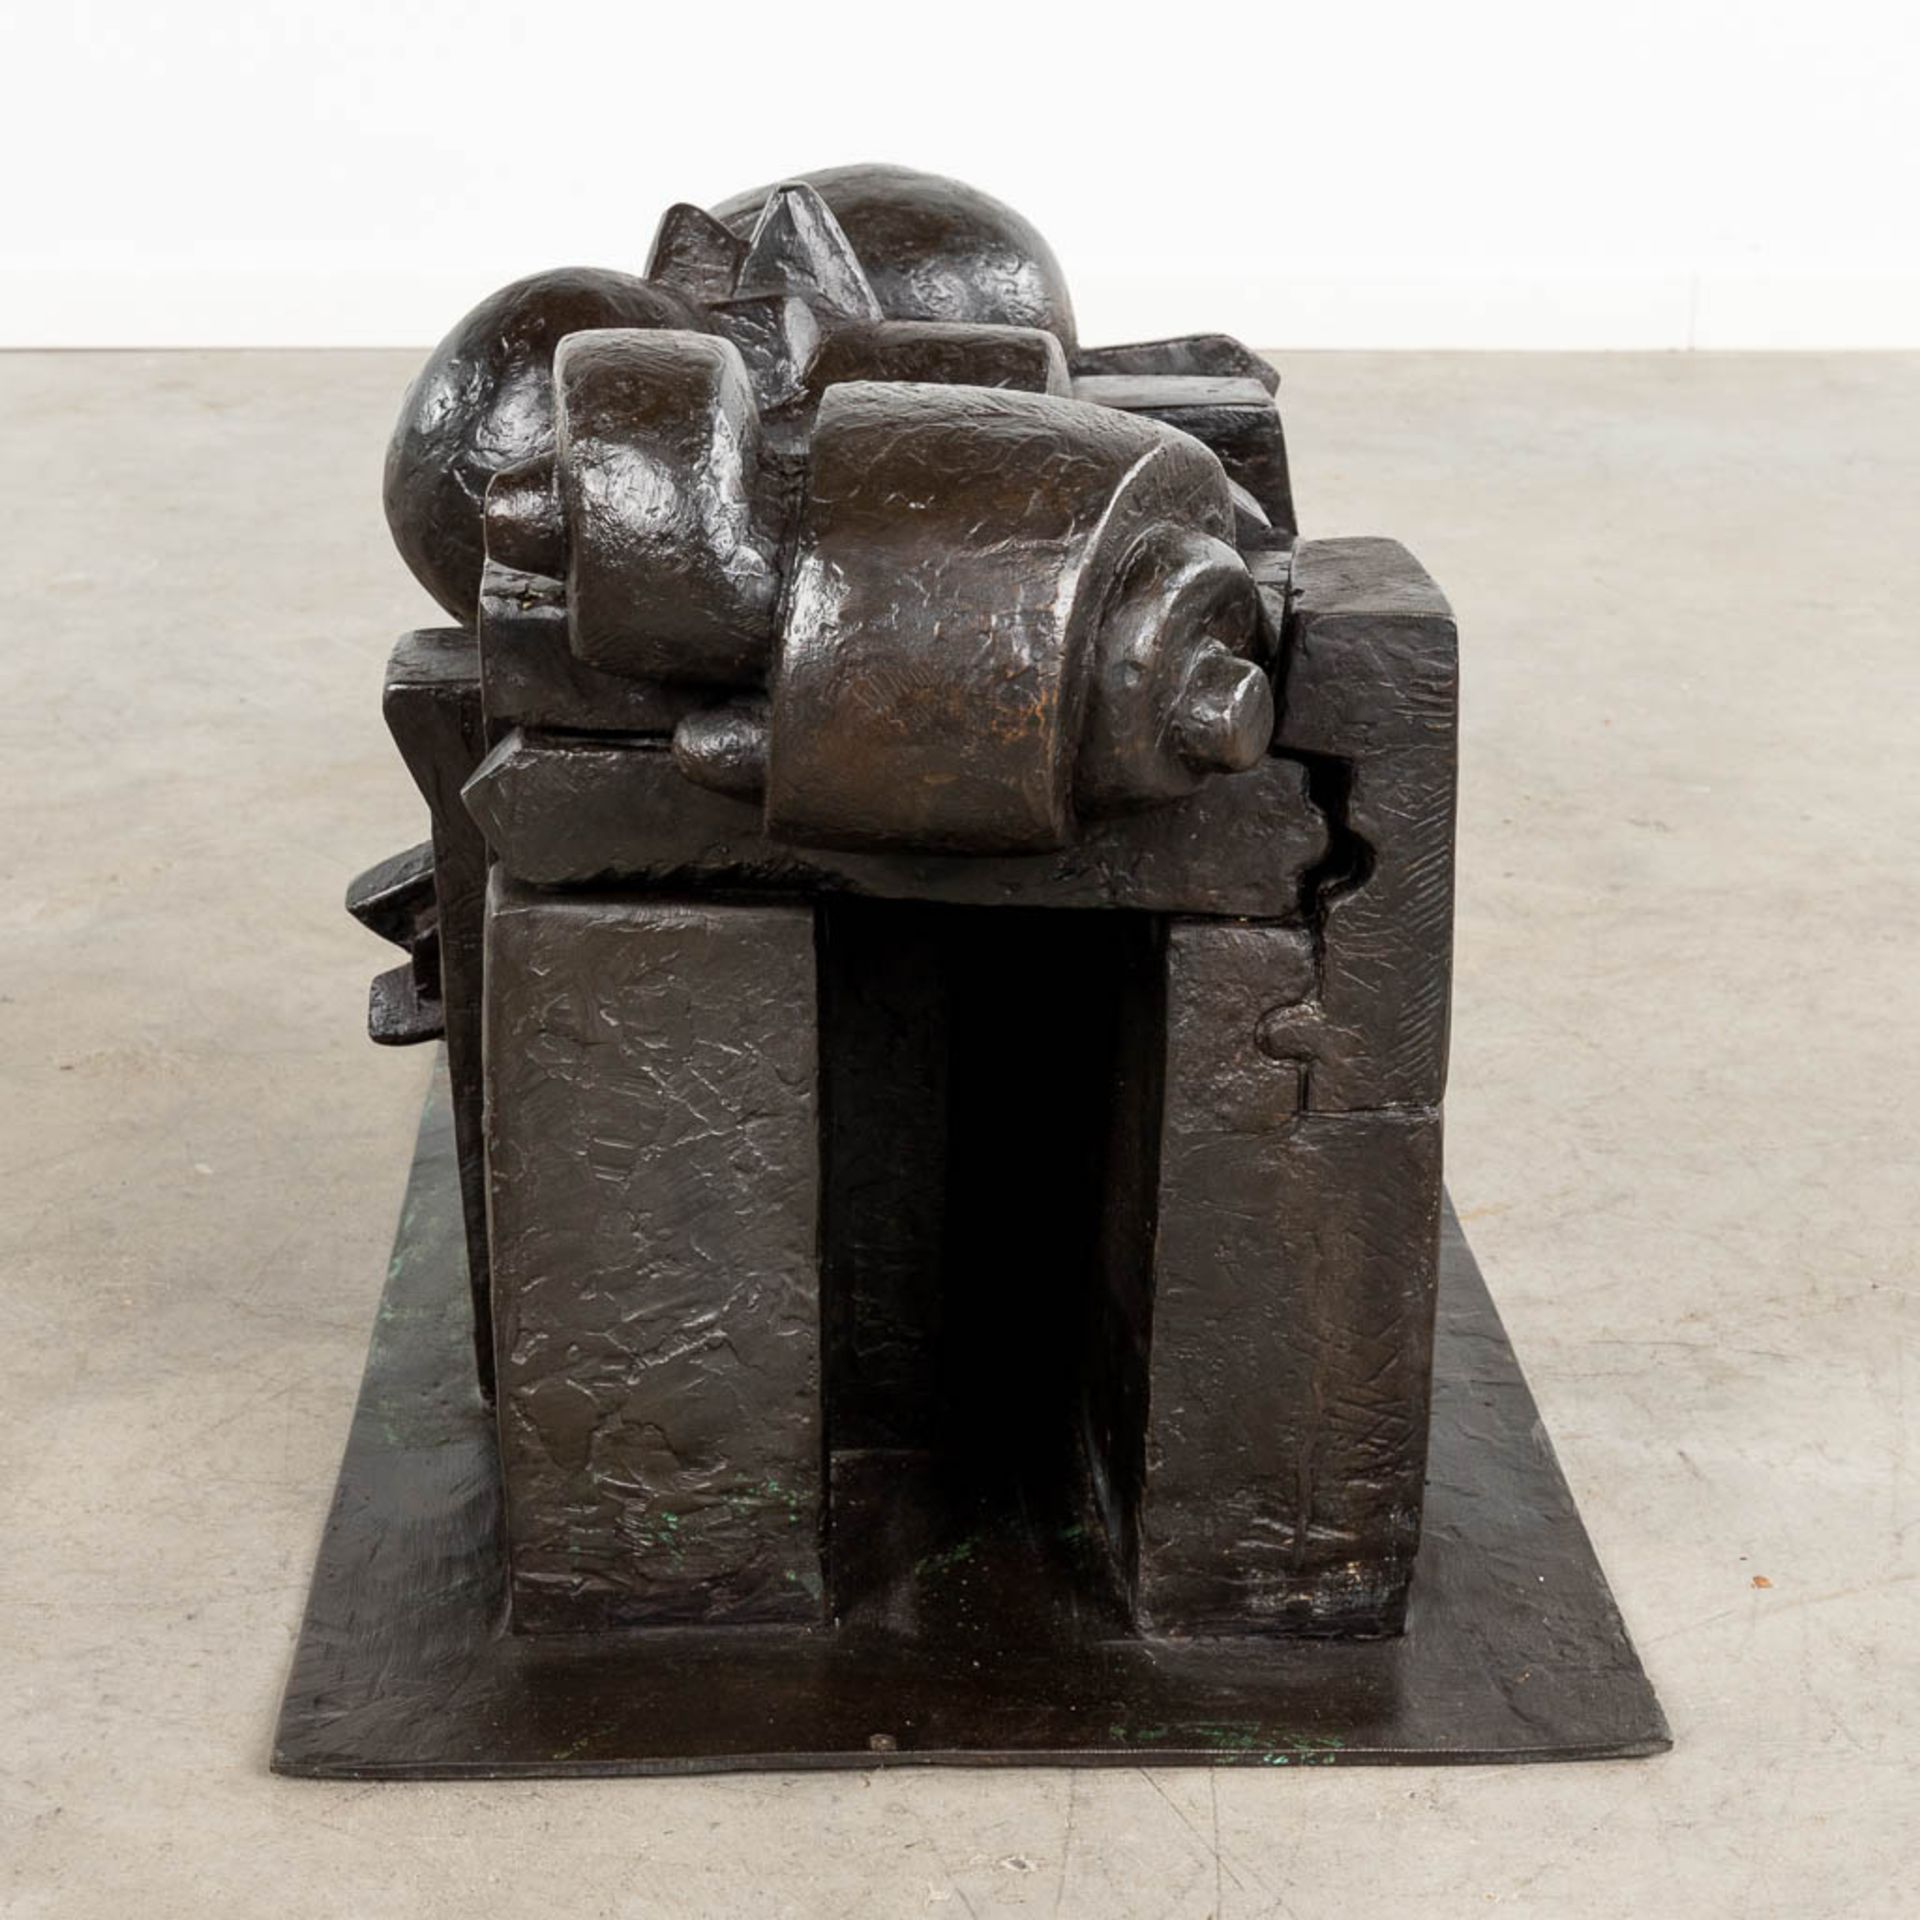 Pietro CASCELLA (1921-2008) Bozetto 'Arco Della Pace' patinated bronze. 1971. (D:43 x W:67 x H:41 cm - Image 6 of 8